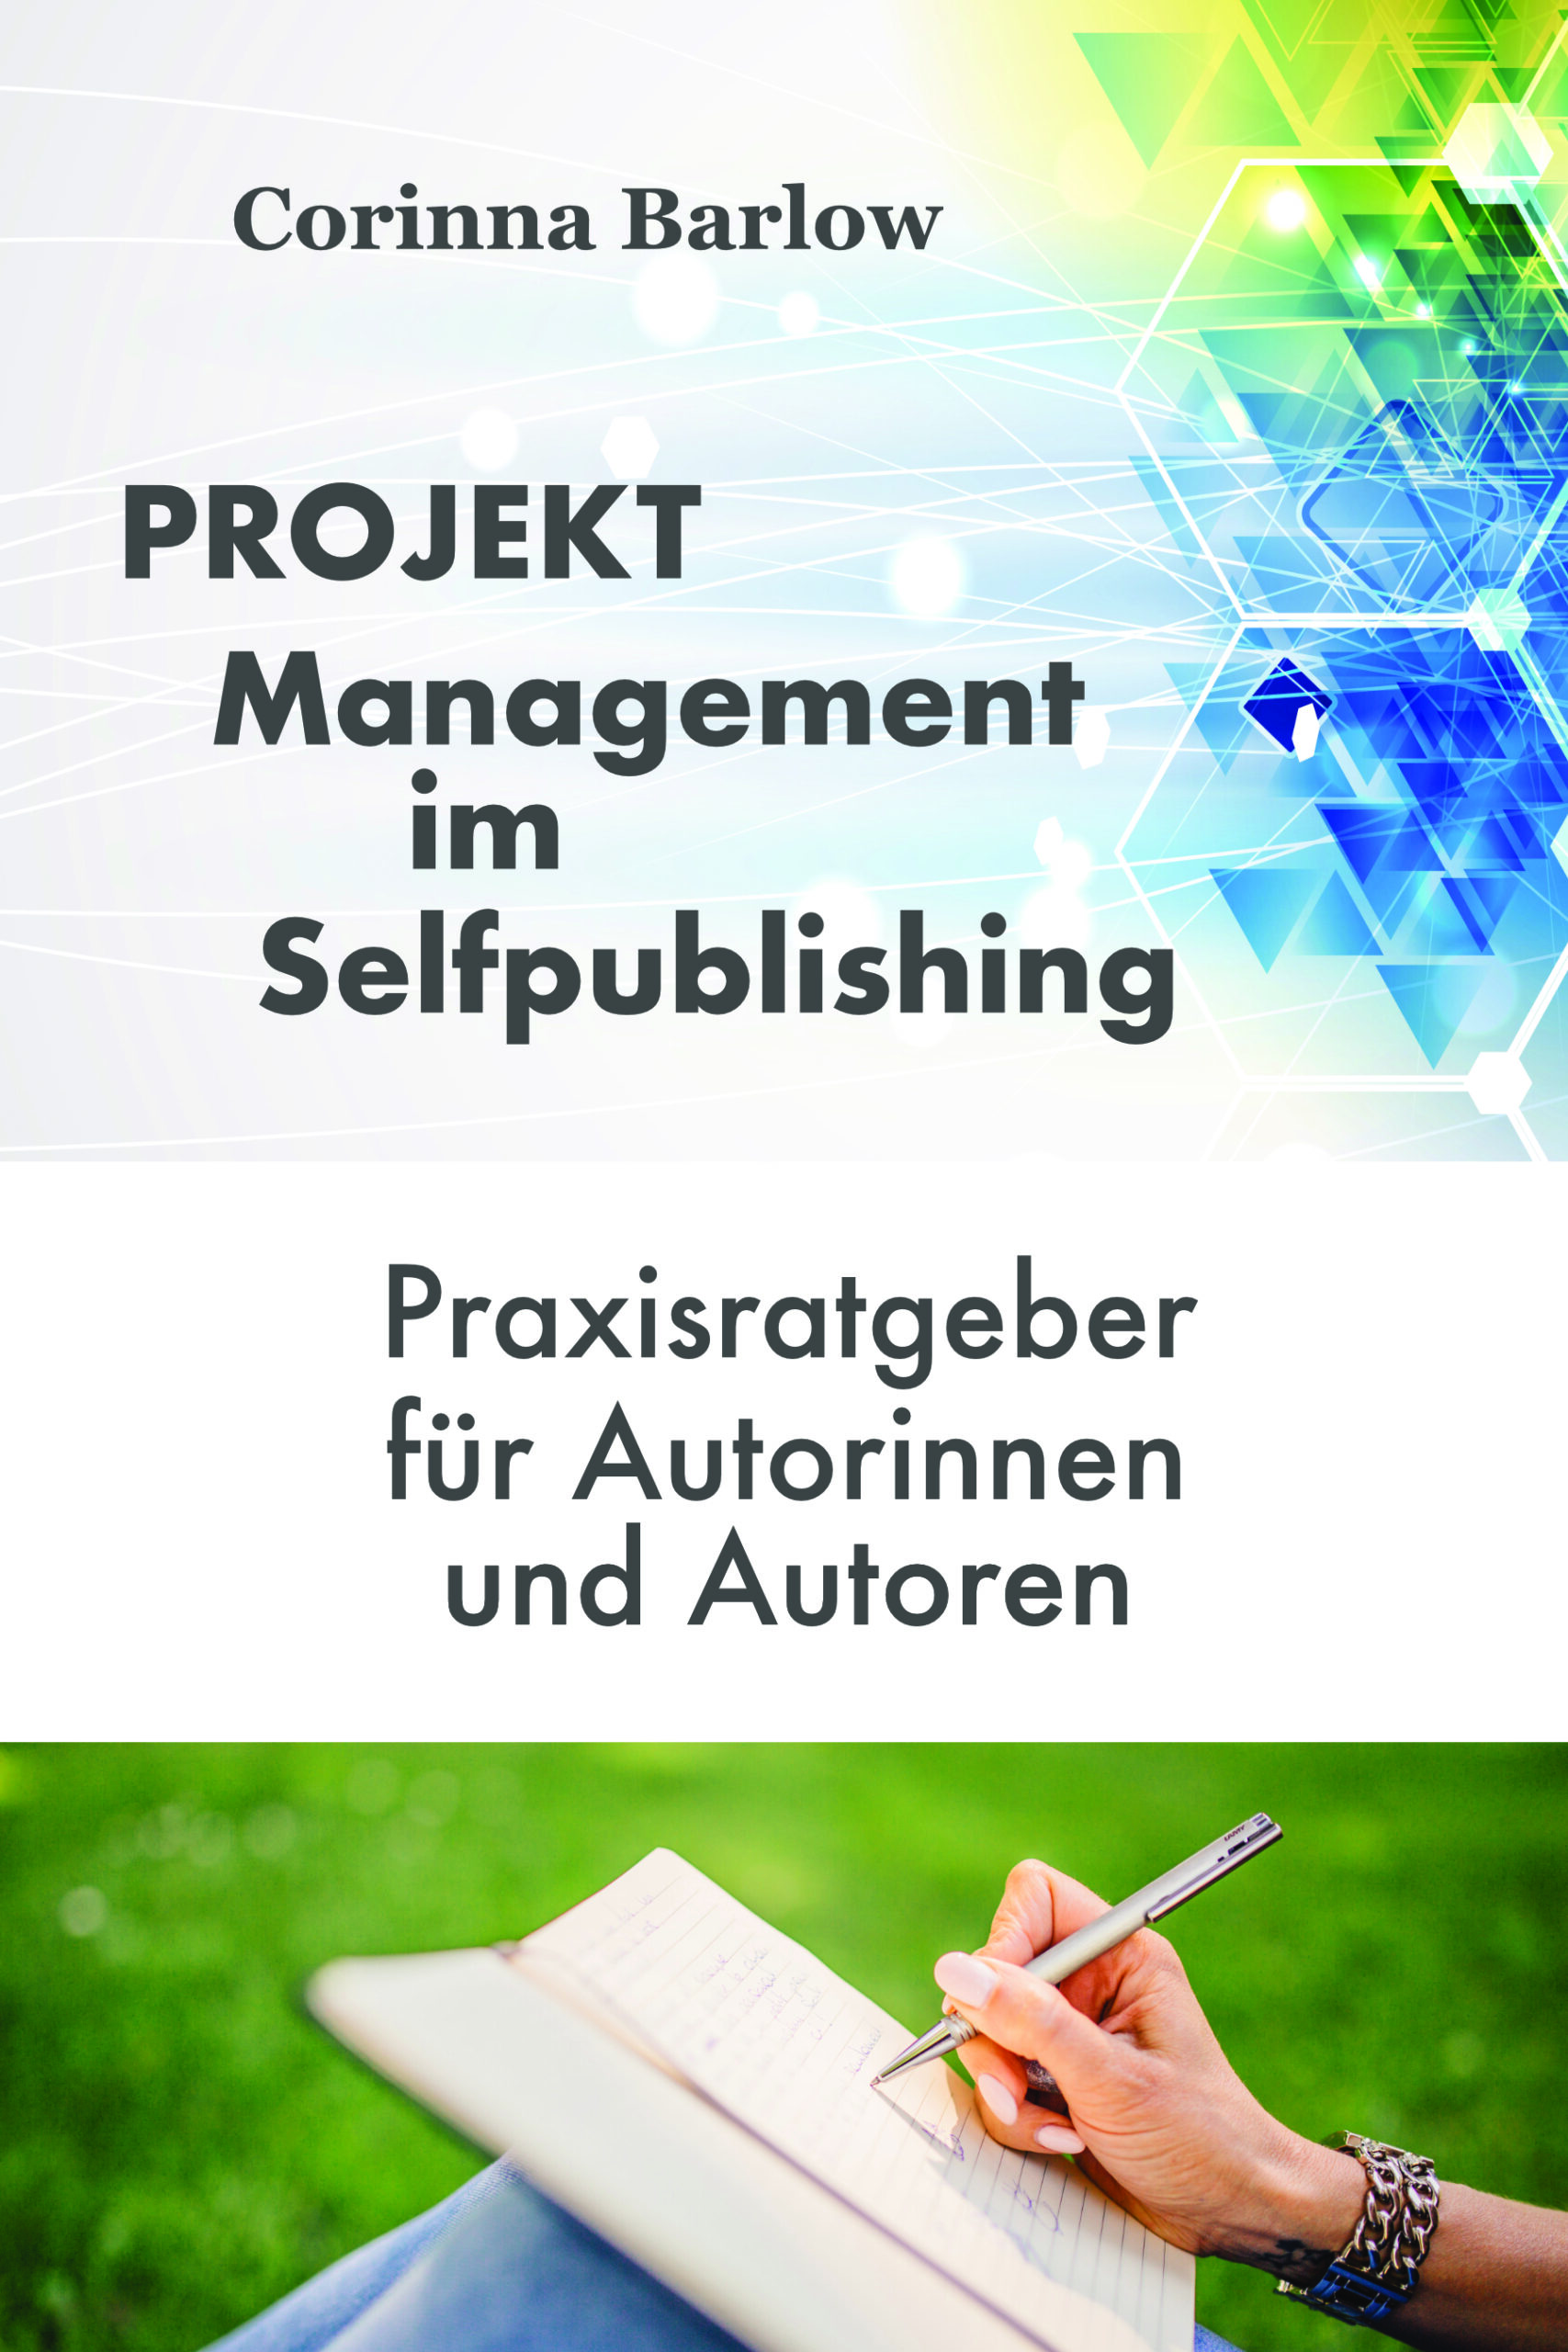 Projektmanagement im Selfpublishing: Praxisratgeber für Autorinnen und Autoren